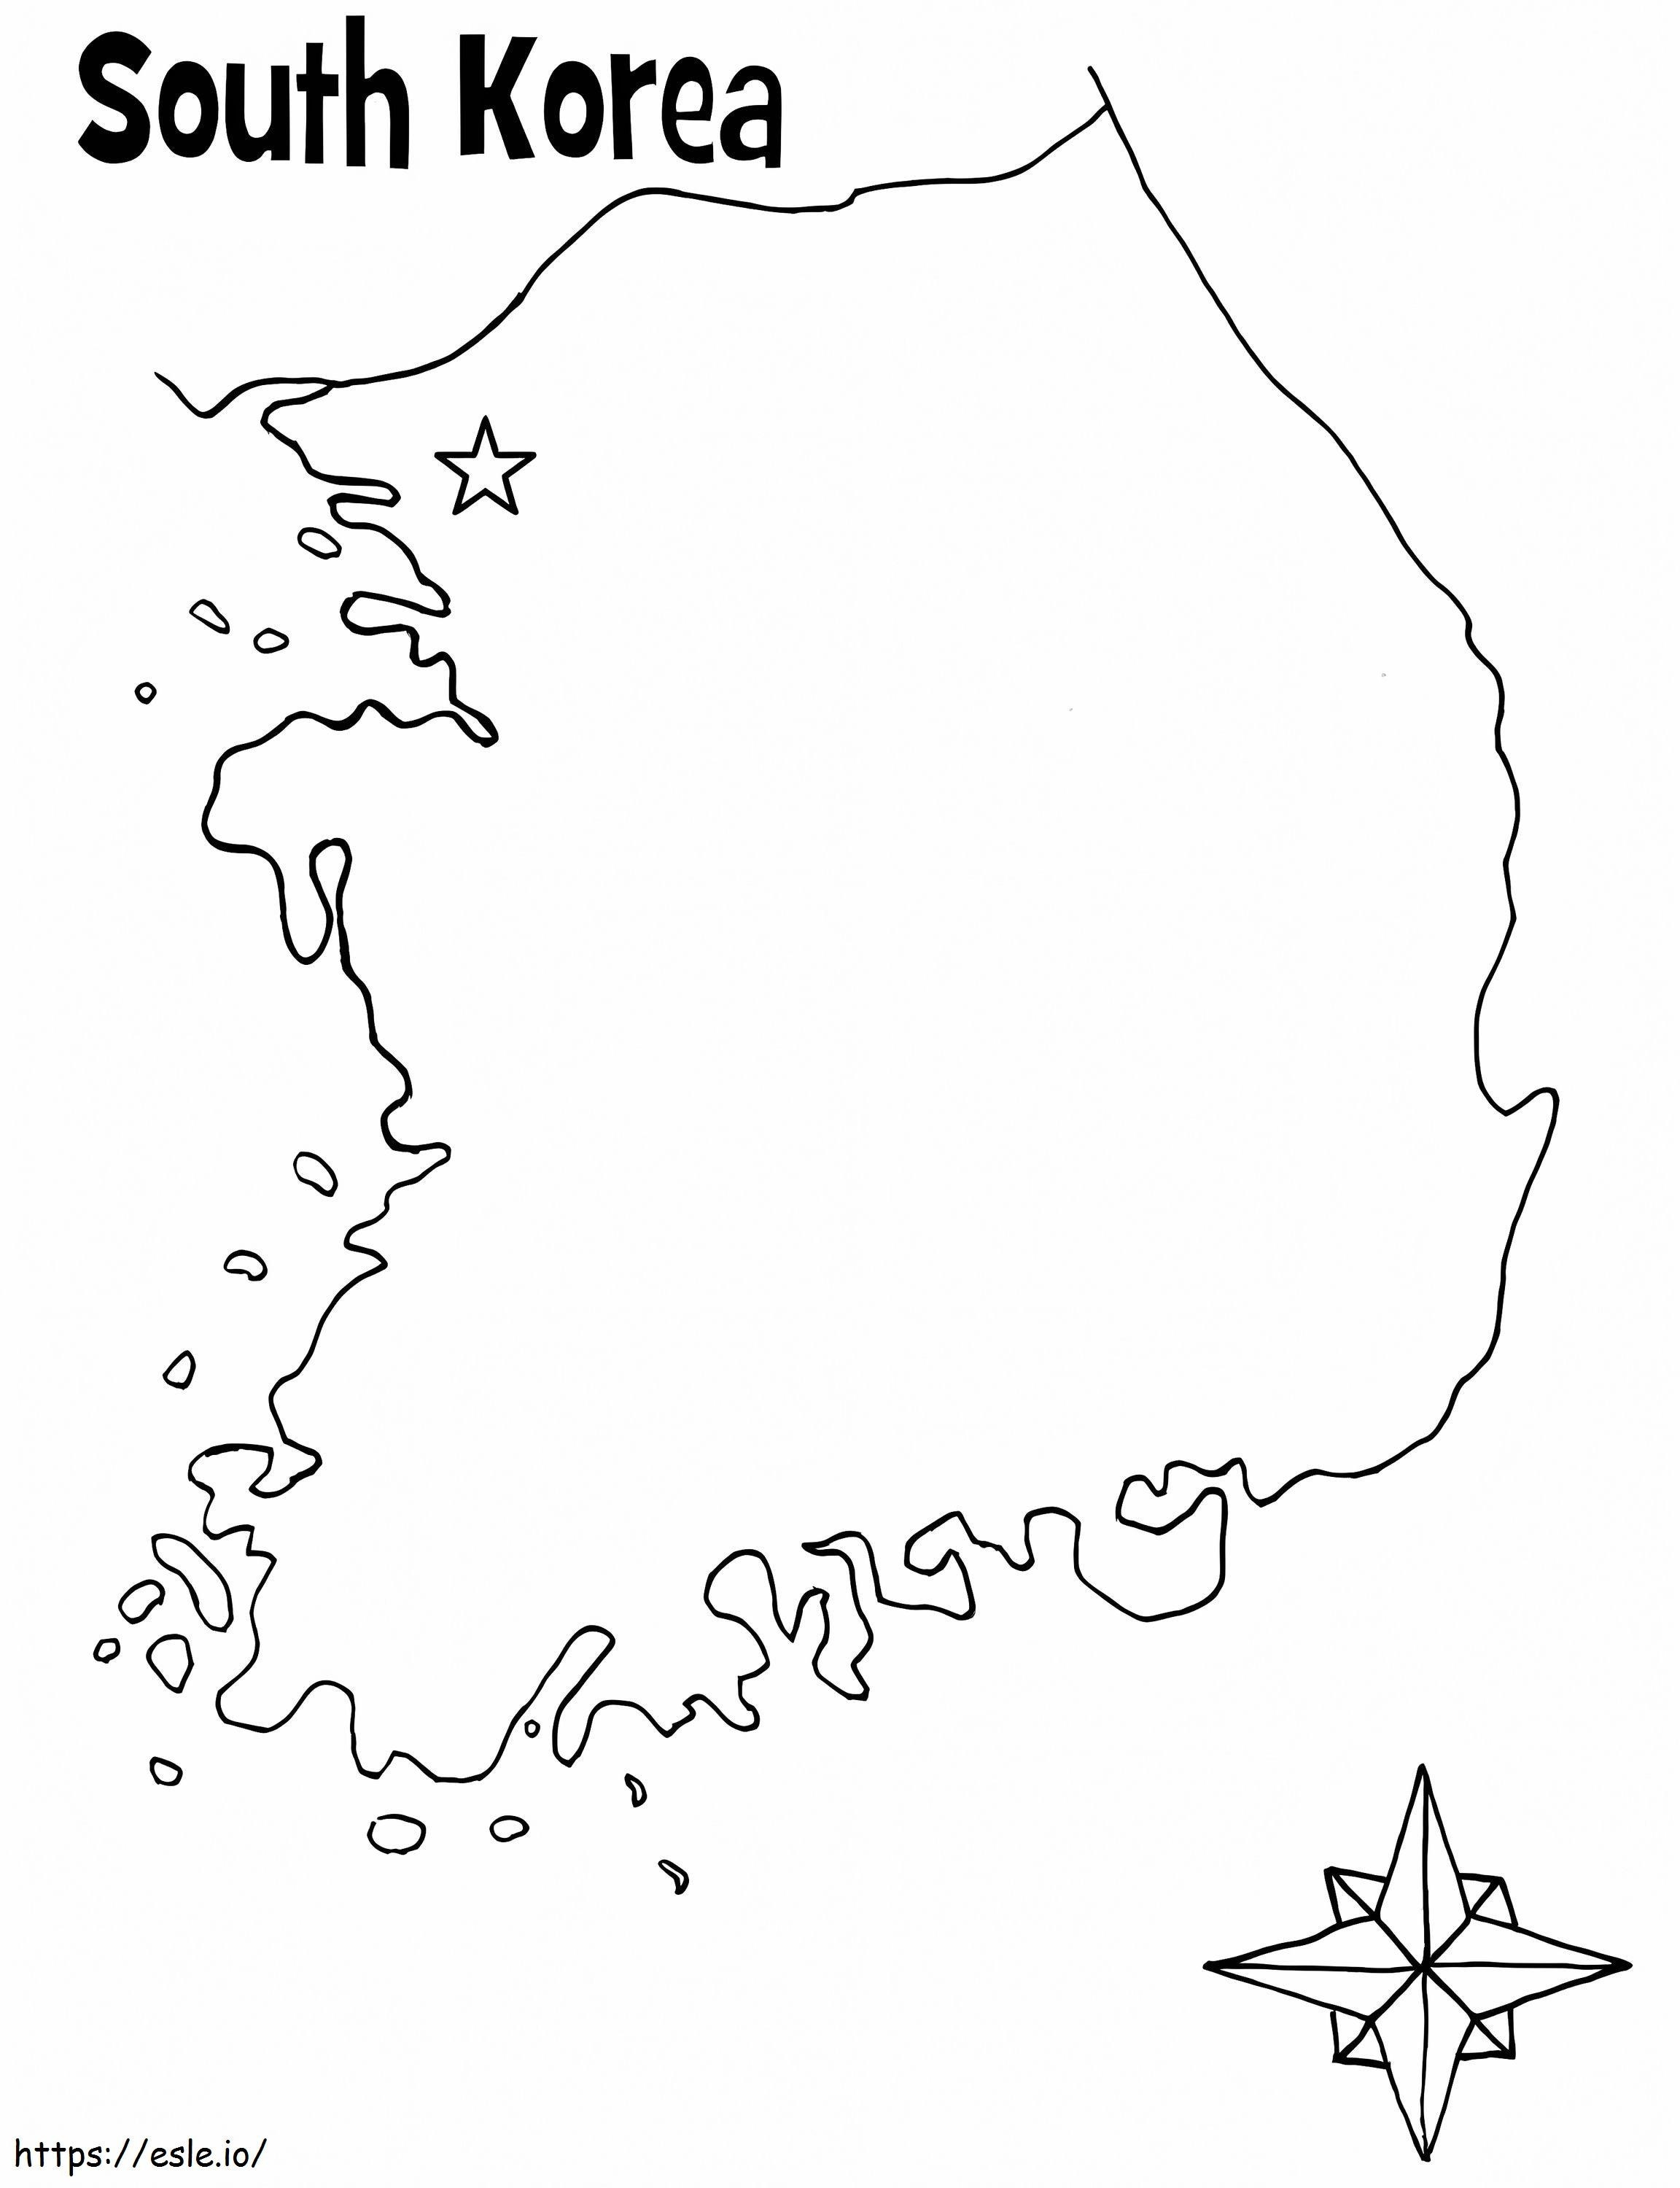 Karte von Südkorea ausmalbilder